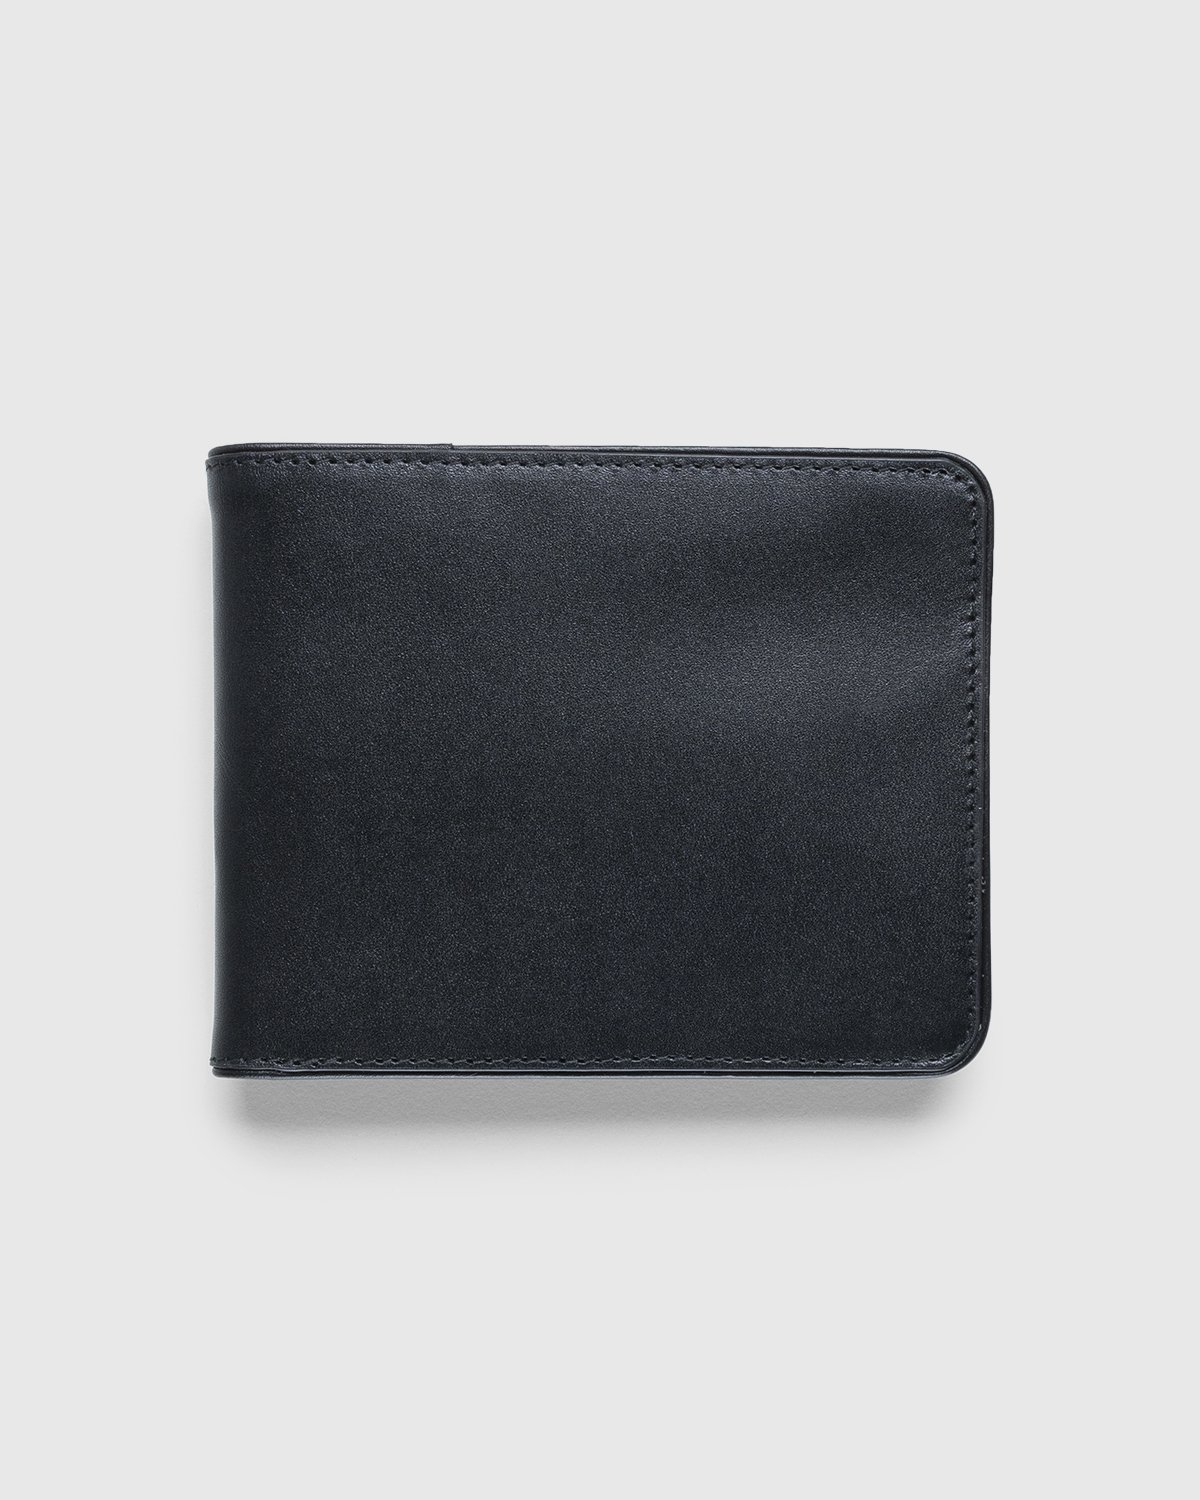 Dries van Noten - Leather Wallet Black - Accessories - Black - Image 1